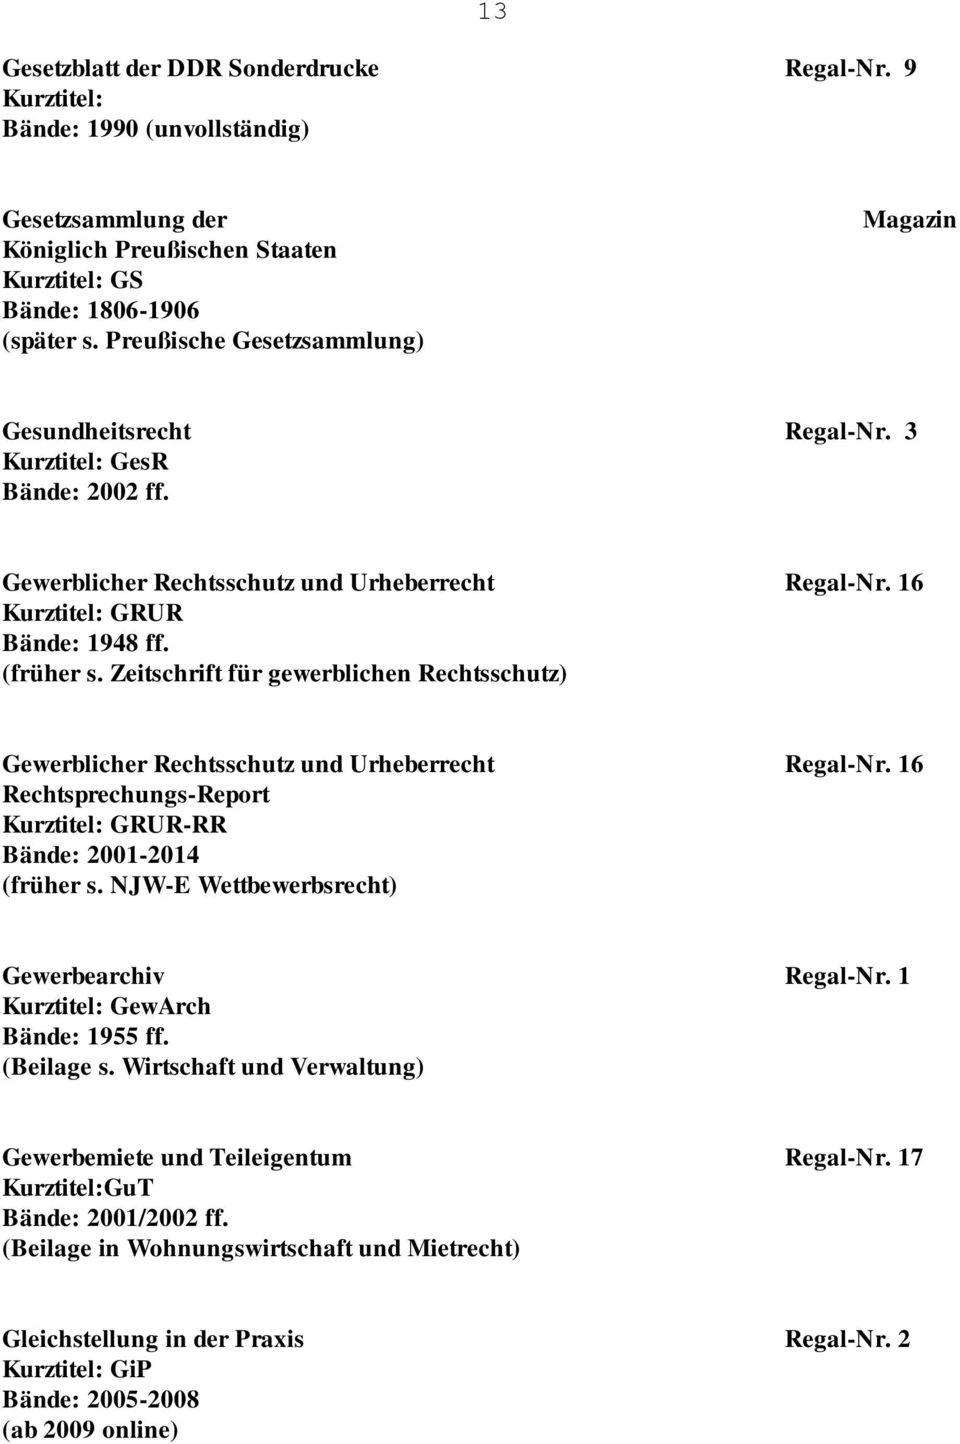 Zeitschrift für gewerblichen Rechtsschutz) Gewerblicher Rechtsschutz und Urheberrecht Regal-Nr. 16 Rechtsprechungs-Report GRUR-RR Bände: 2001-2014 (früher s.